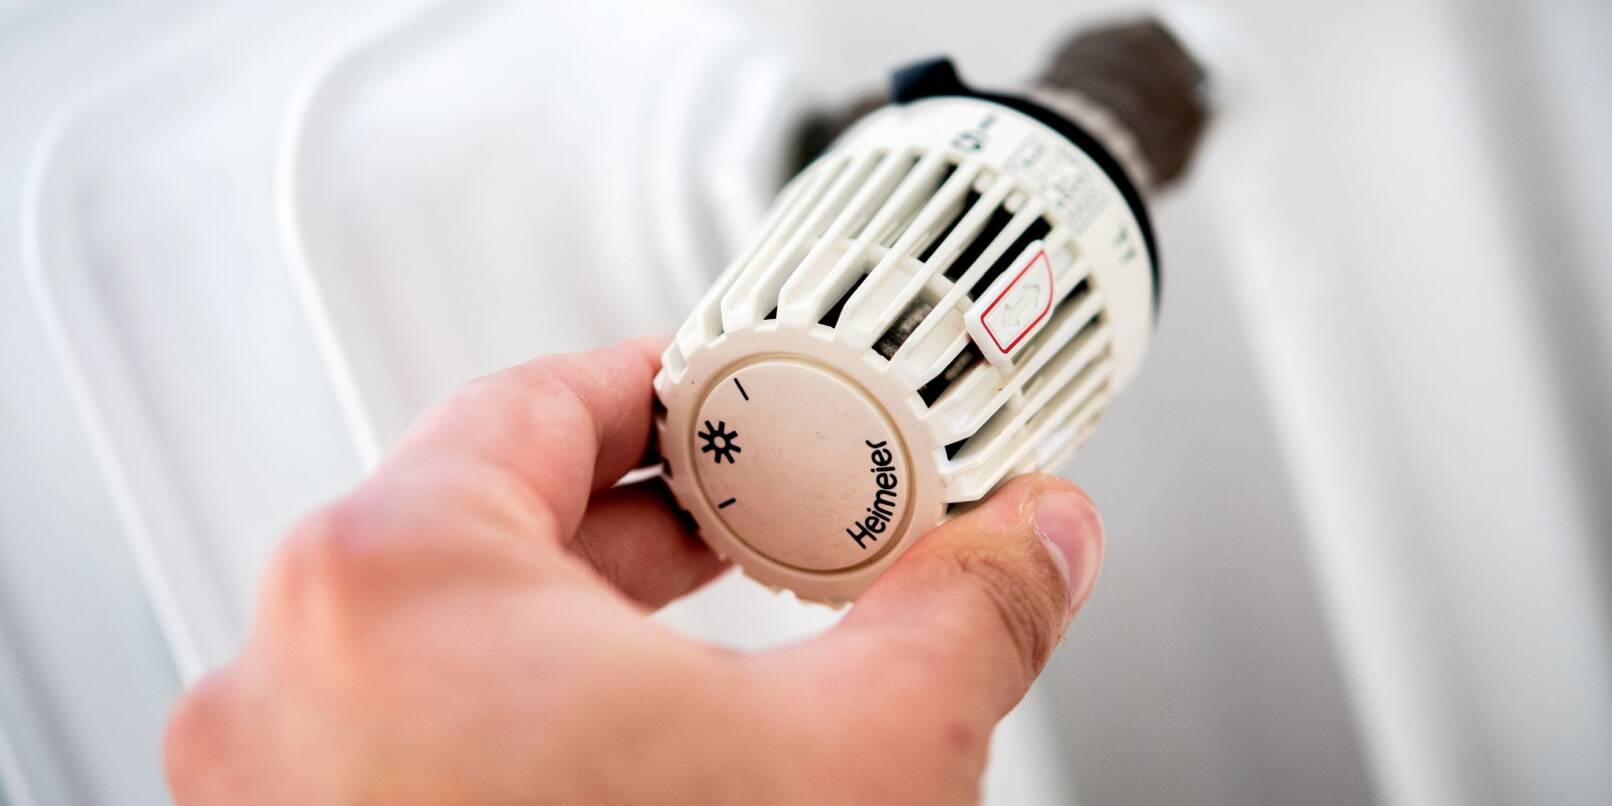 Ein Mann dreht in einer Wohnung am Thermostat einer Heizung.